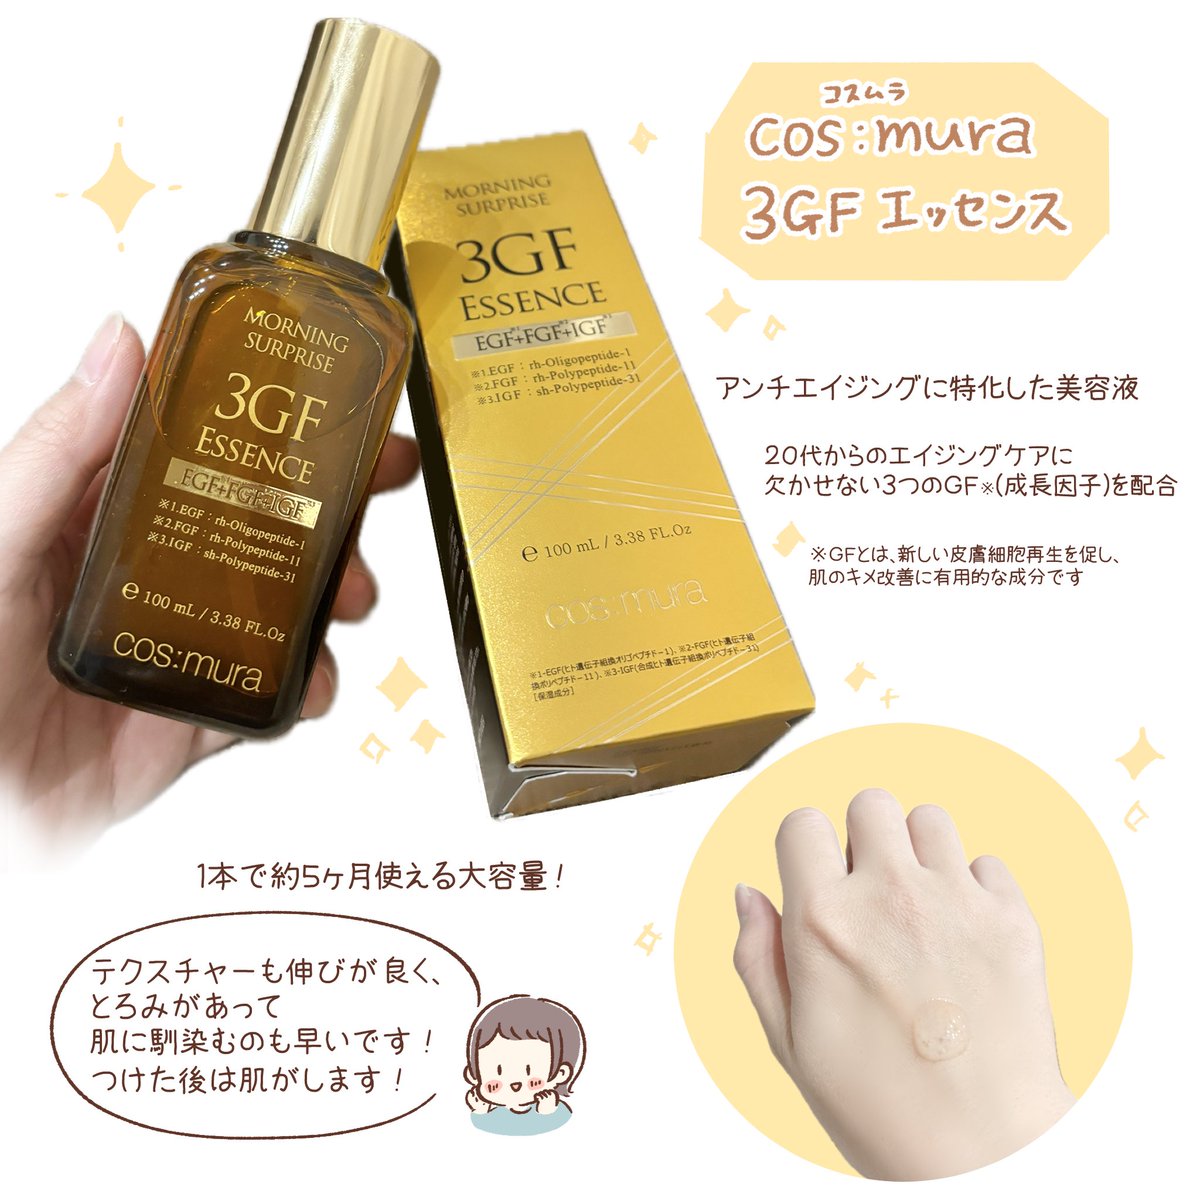 コスムラの人気美容液をお試しさせていただきました✨乳酸菌と3GF配合でアンチエイジングに特化した美容液です☺️
大容量なのでたっぷり塗ることができます!

@cosmura_cosme 

#PR #コスムラ 